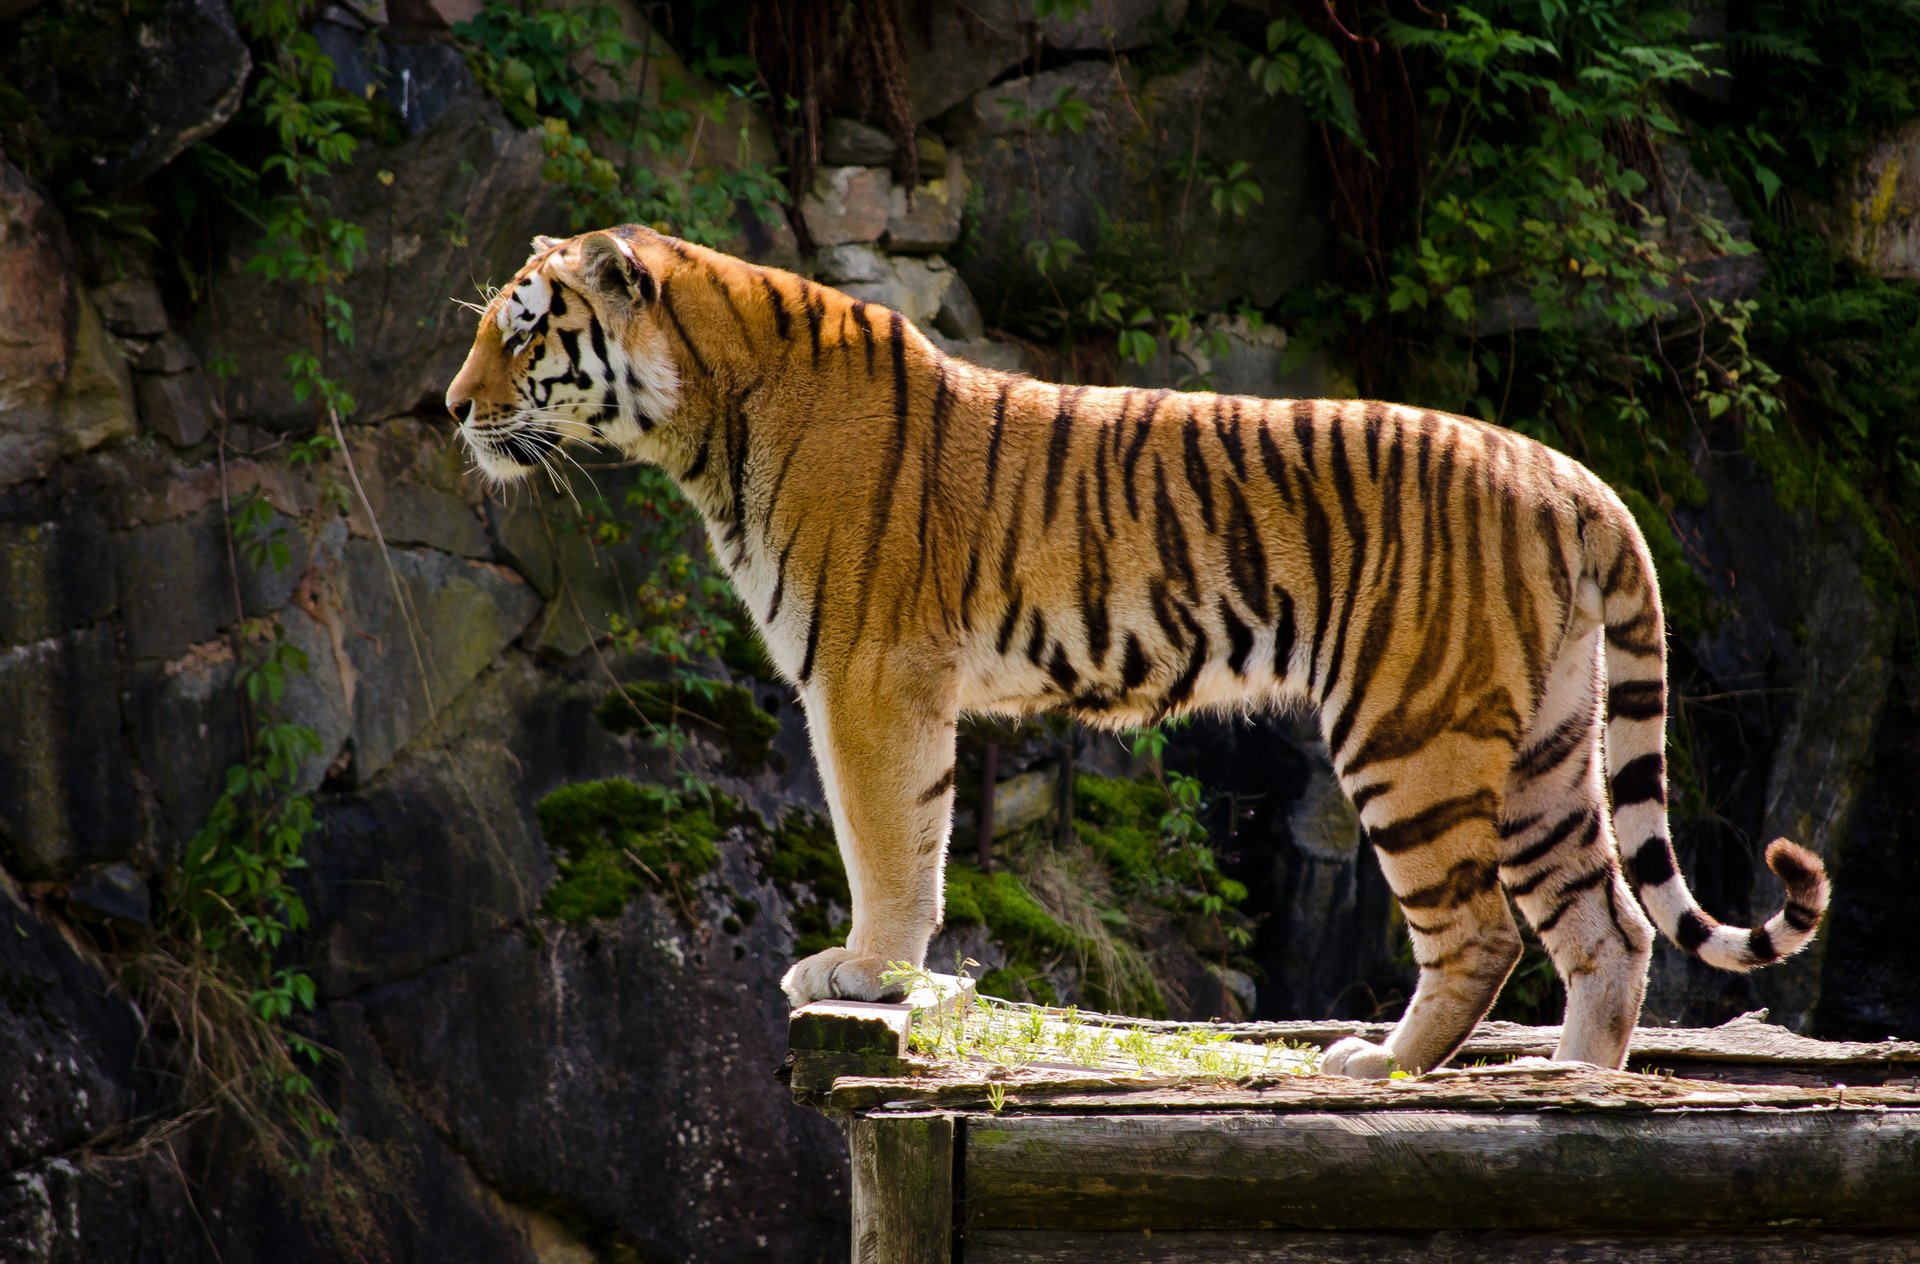 Predatory tiger in profile